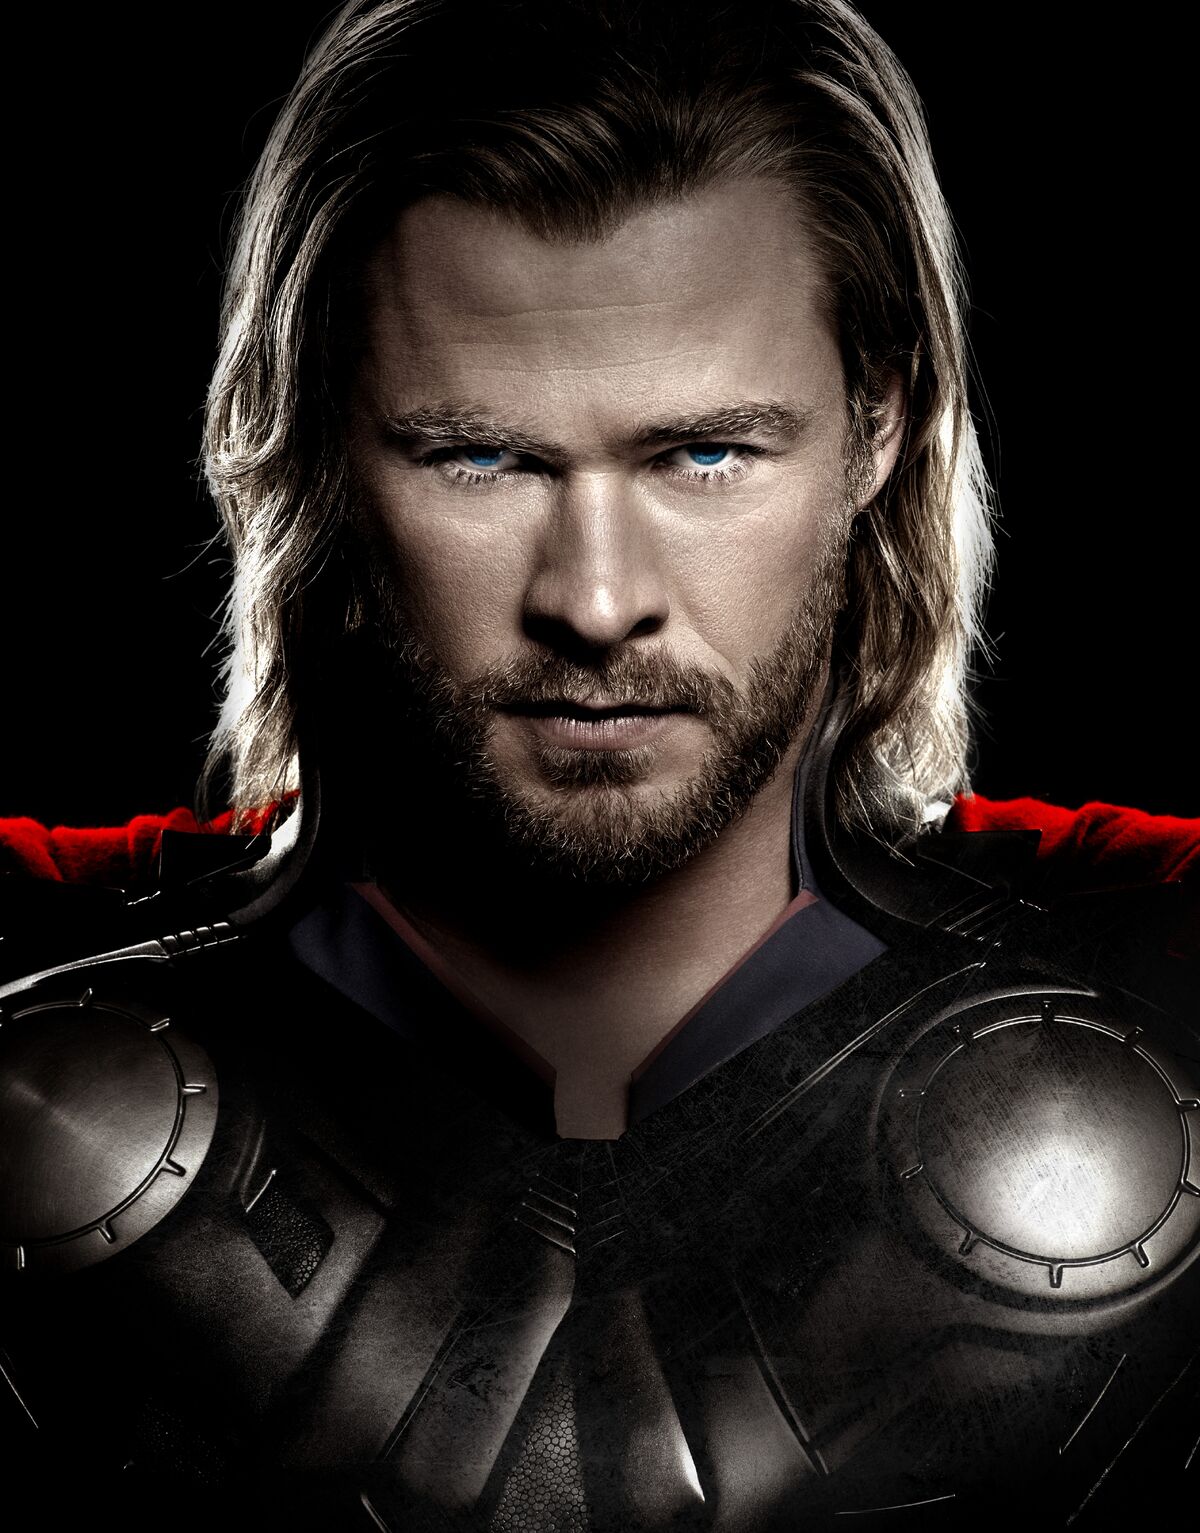 Thor: Ragnarok no Cinema Especial: 6 curiosidades sobre o filme